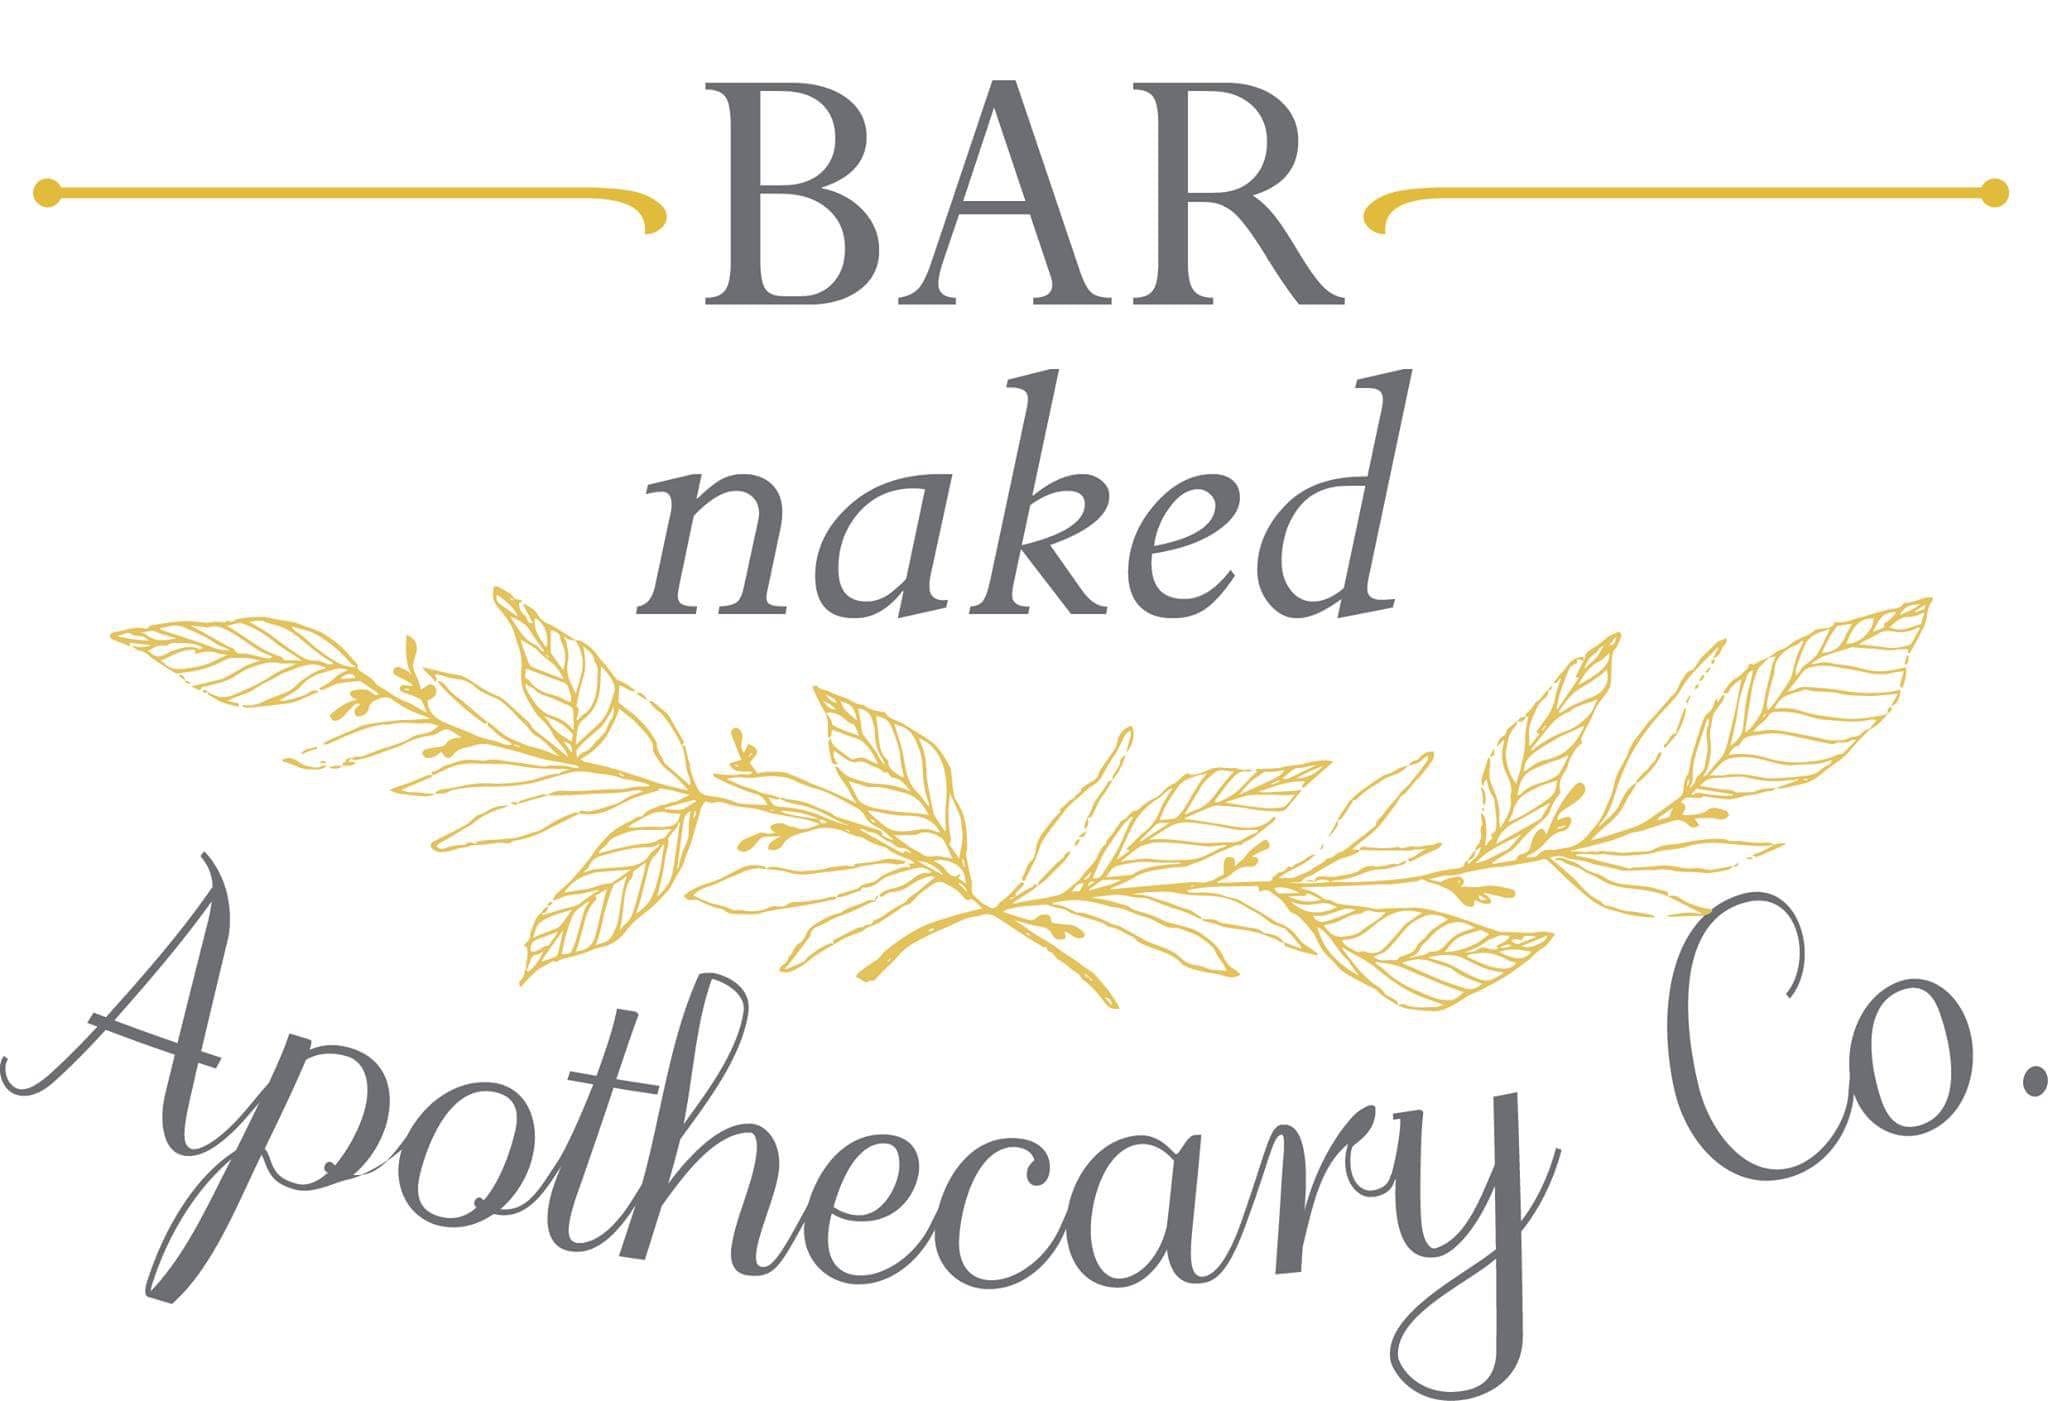 BAR naked Apothecary Co.